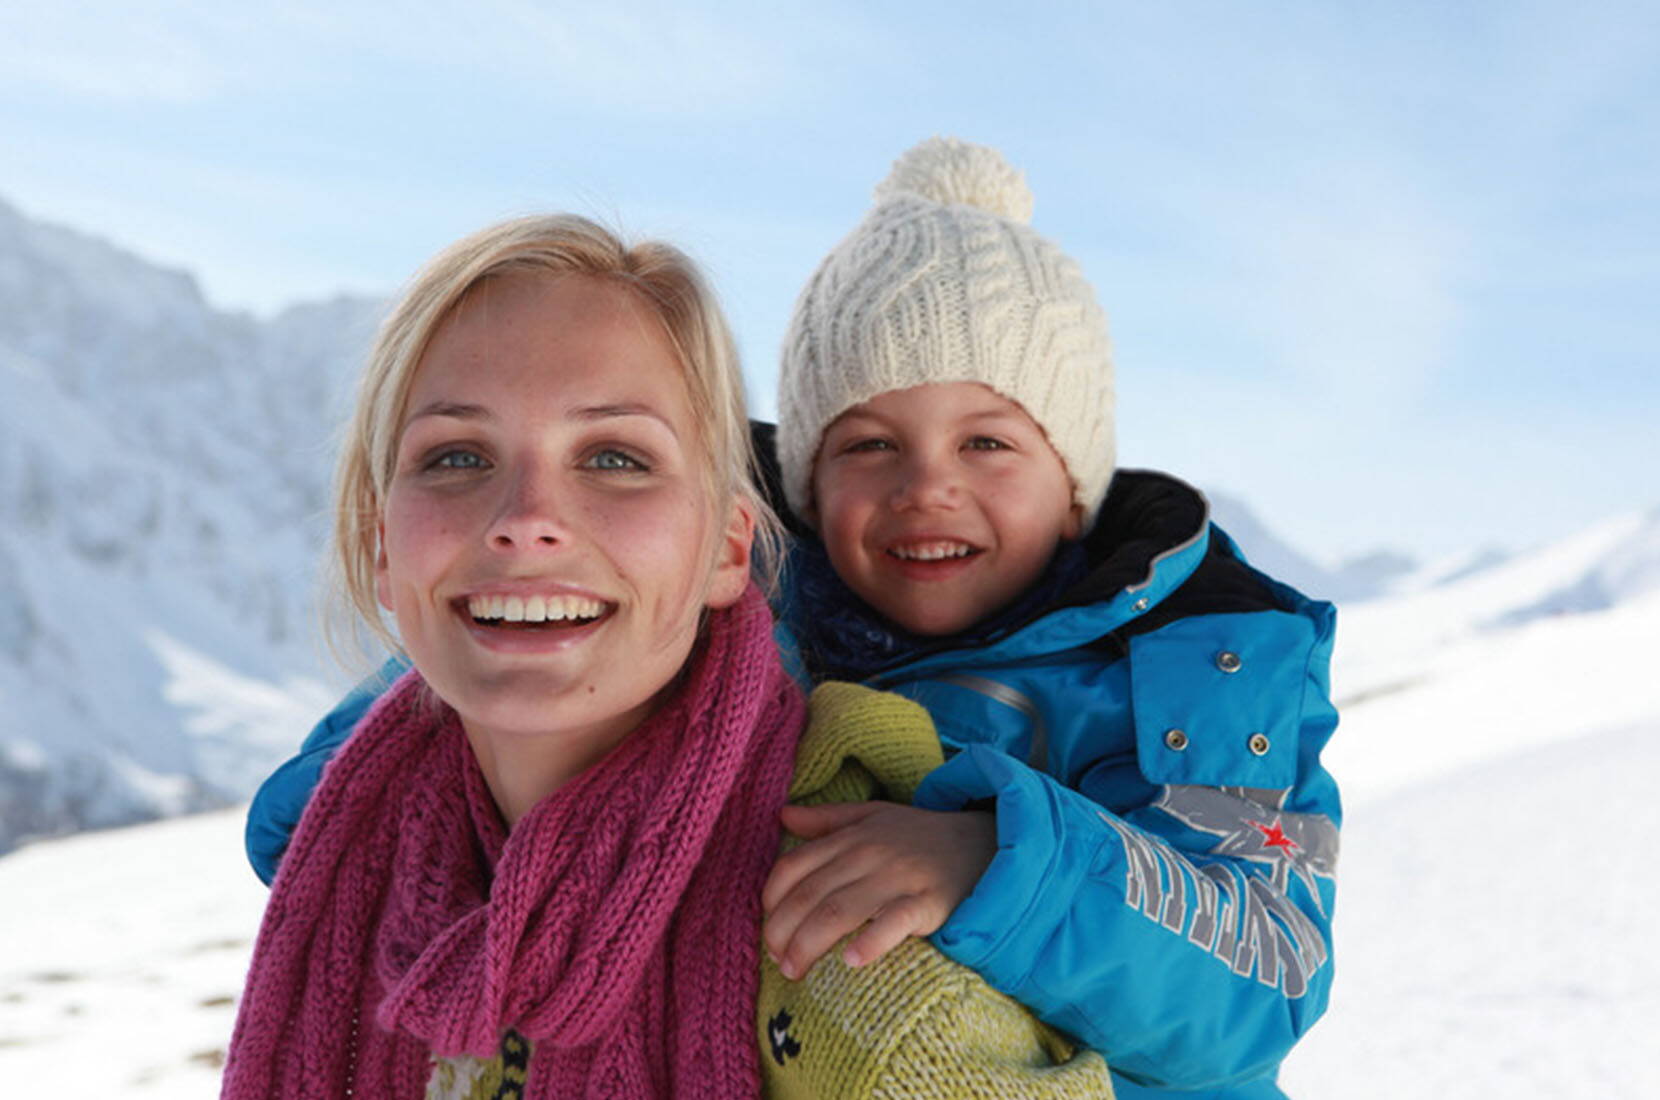 Familienausflug Savognin. Mit viel Naturschnee und extrabreiten roten und blauen Pisten bietet das sonnenverwöhnte Skigebiet besonderen Fahrspass – nicht umsonst zählen die Pisten in Savognin zu den Schönsten im ganzen Alpenraum.
